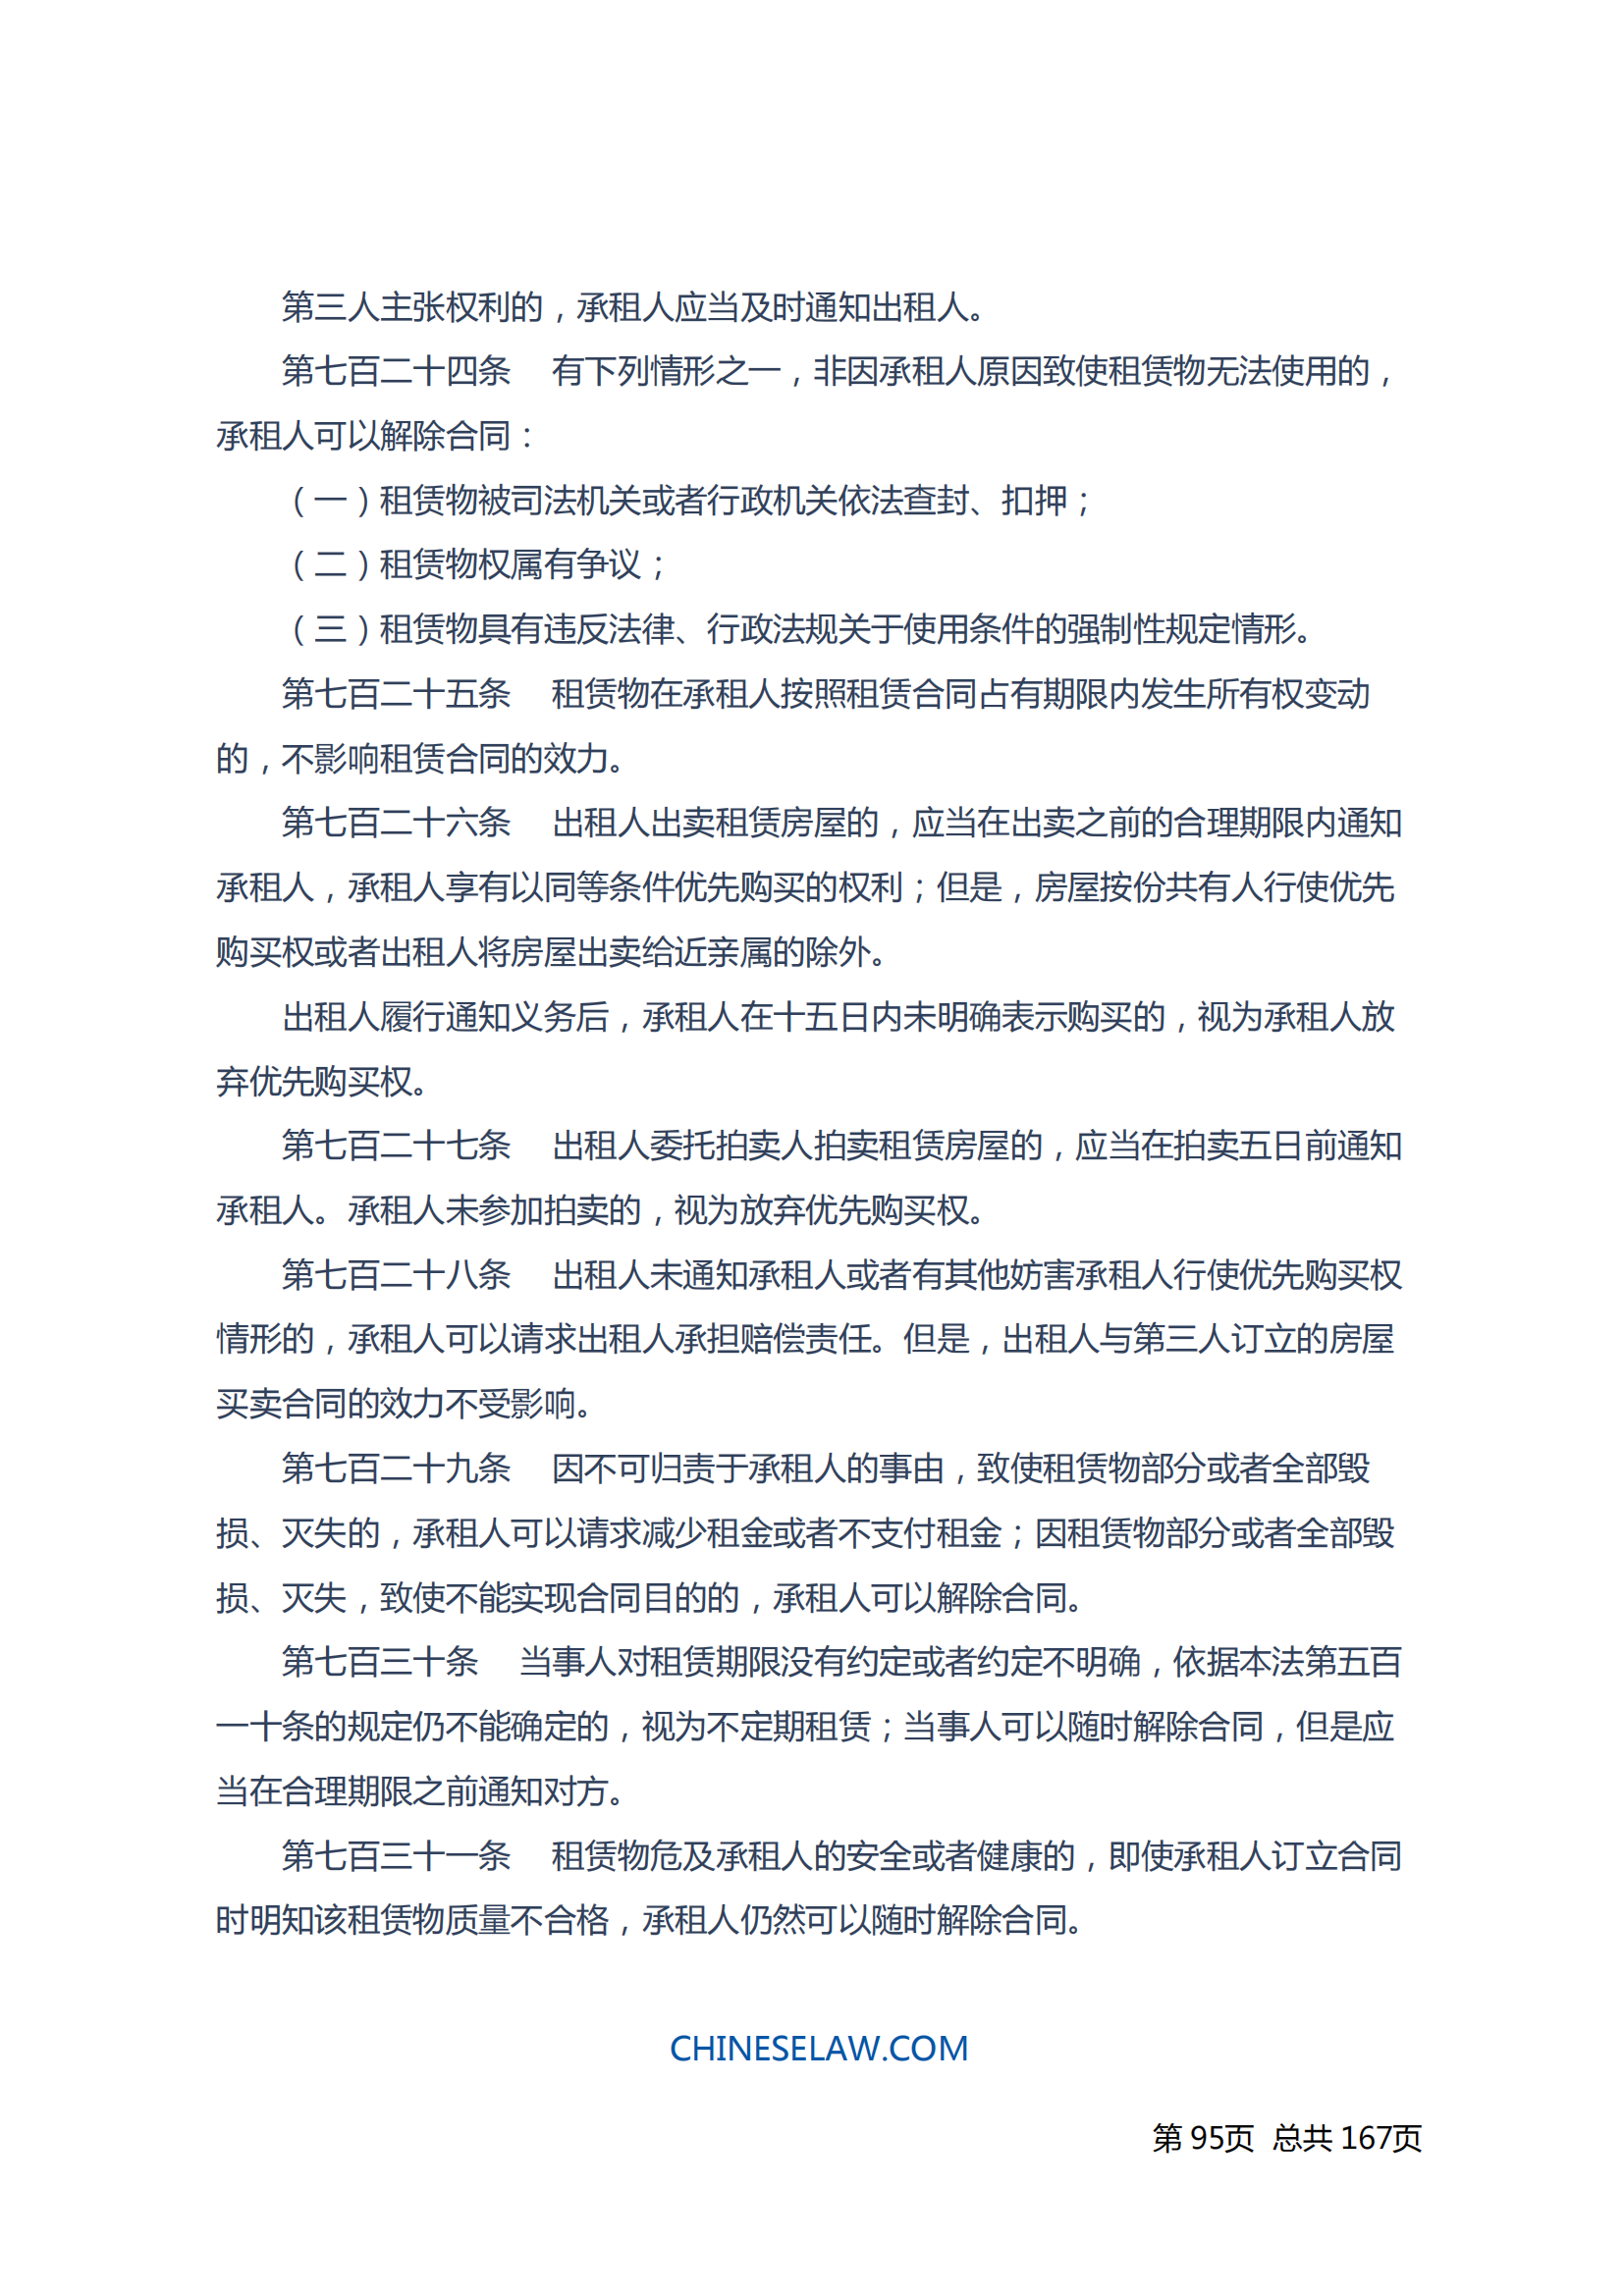 中华人民共和国民法典_94